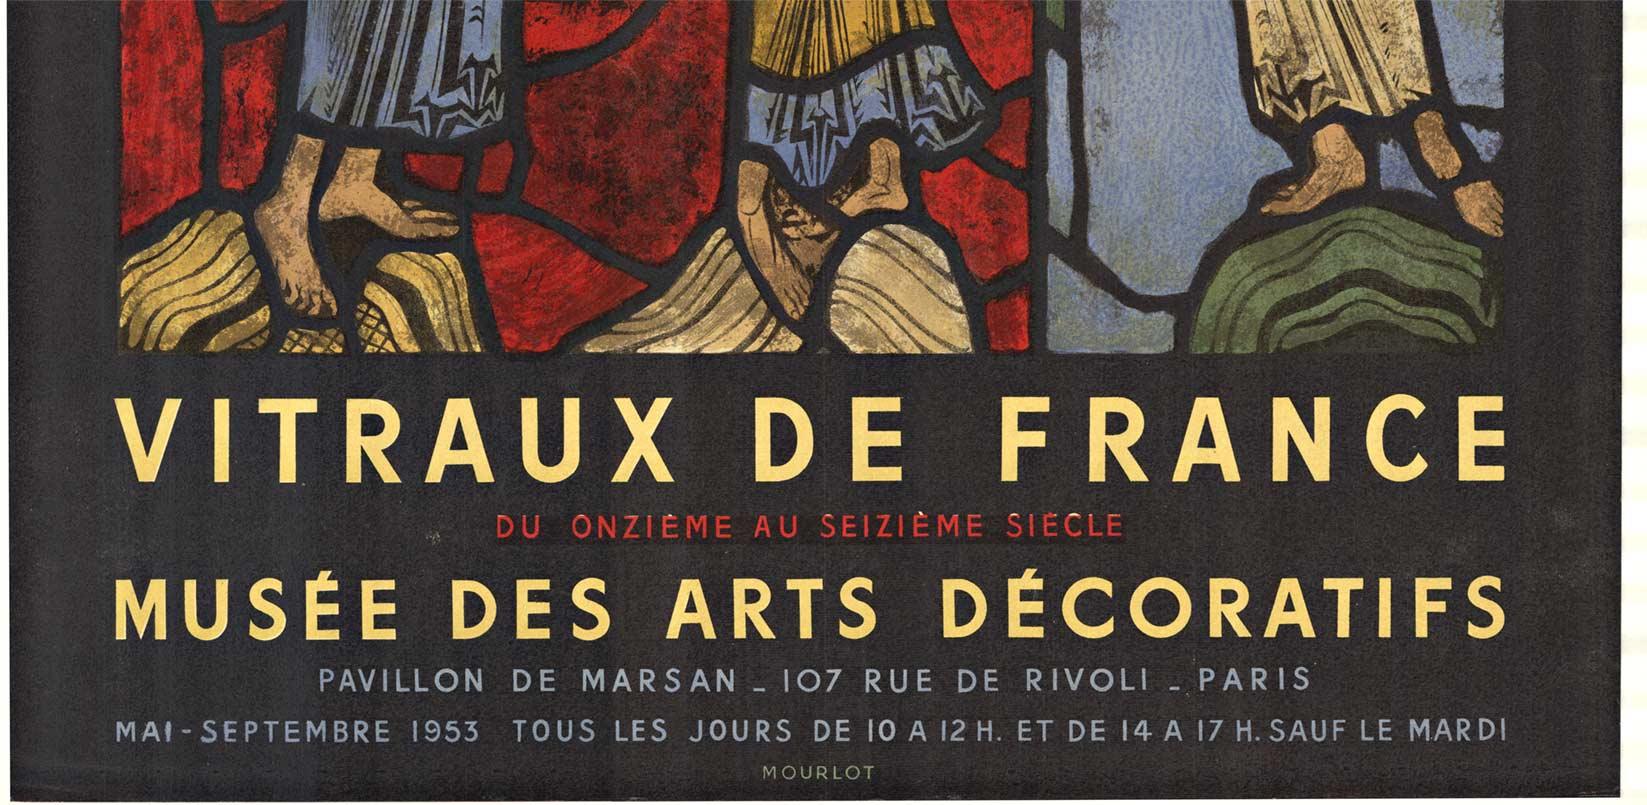 VITRAUX DE FRANCE.   Musée des arts décoratifs, Paris.  Ein Originalplakat von Mourlot aus dem Jahr 1953, das die Ausstellung der Glasmalerei vom elften bis zum sechzehnten Jahrhundert zeigt.   Dies ist ein seltenes und sehr gut erhaltenes